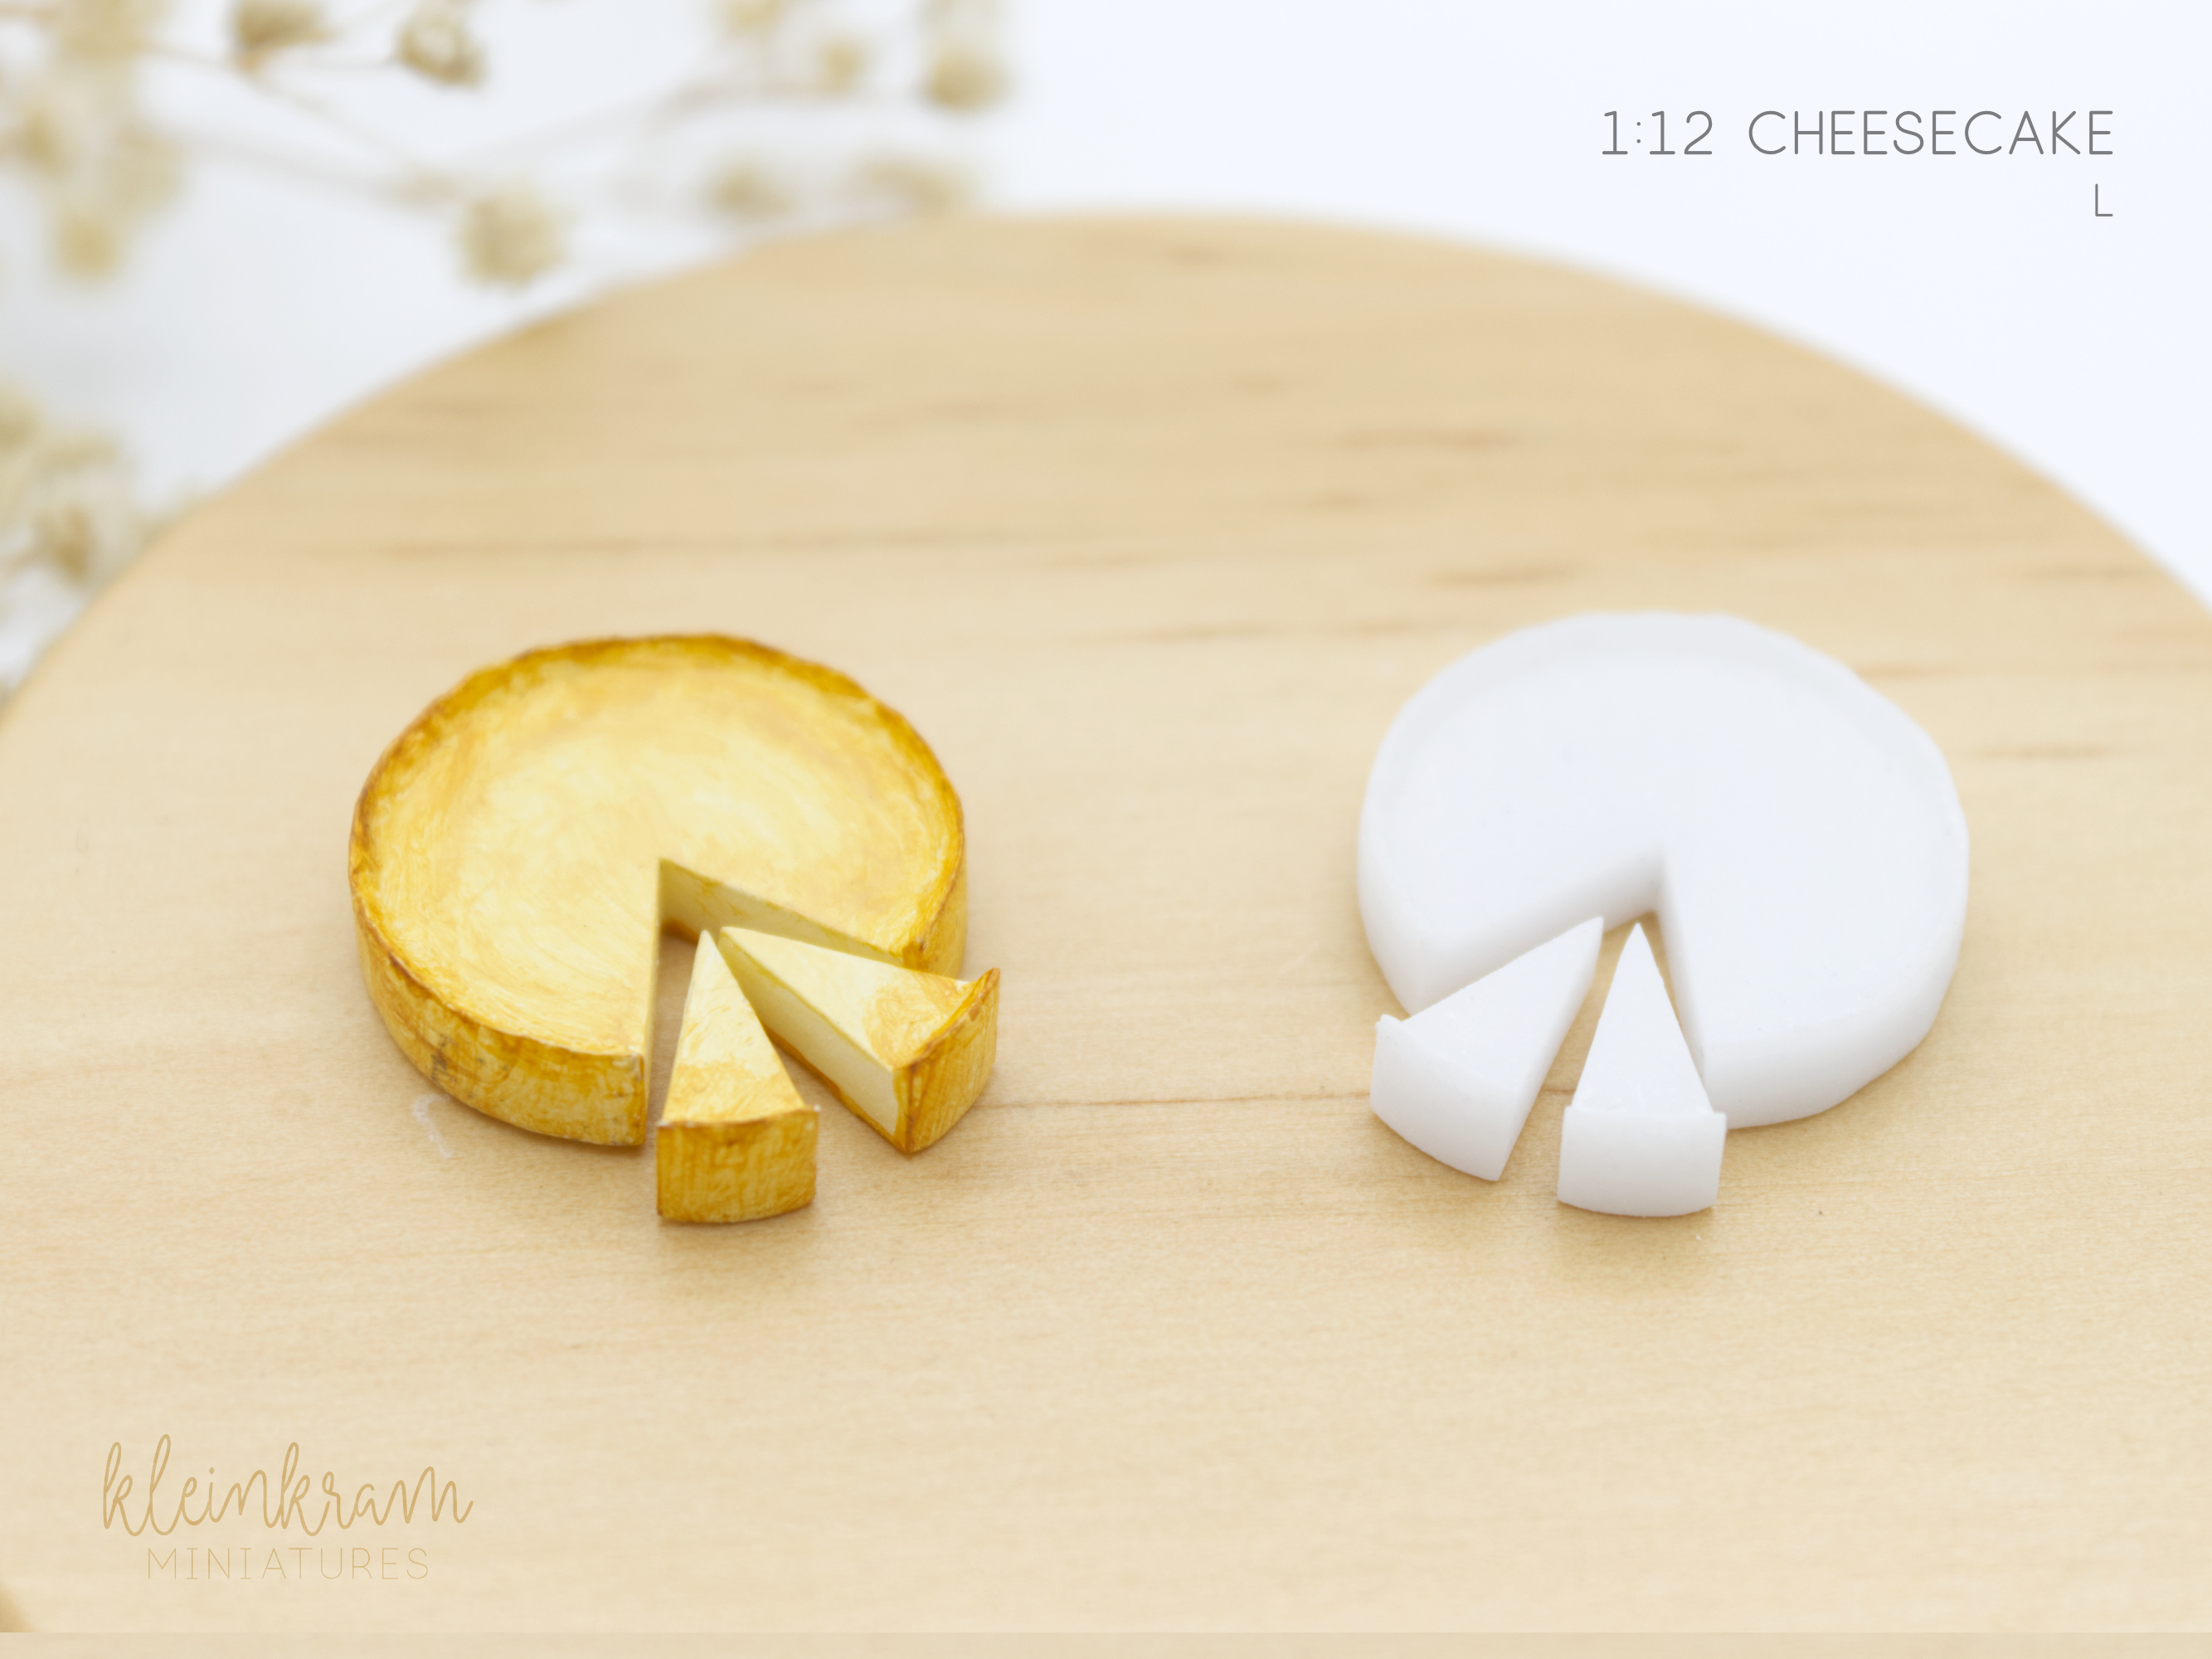 Cheesecake - 1/12 Miniature